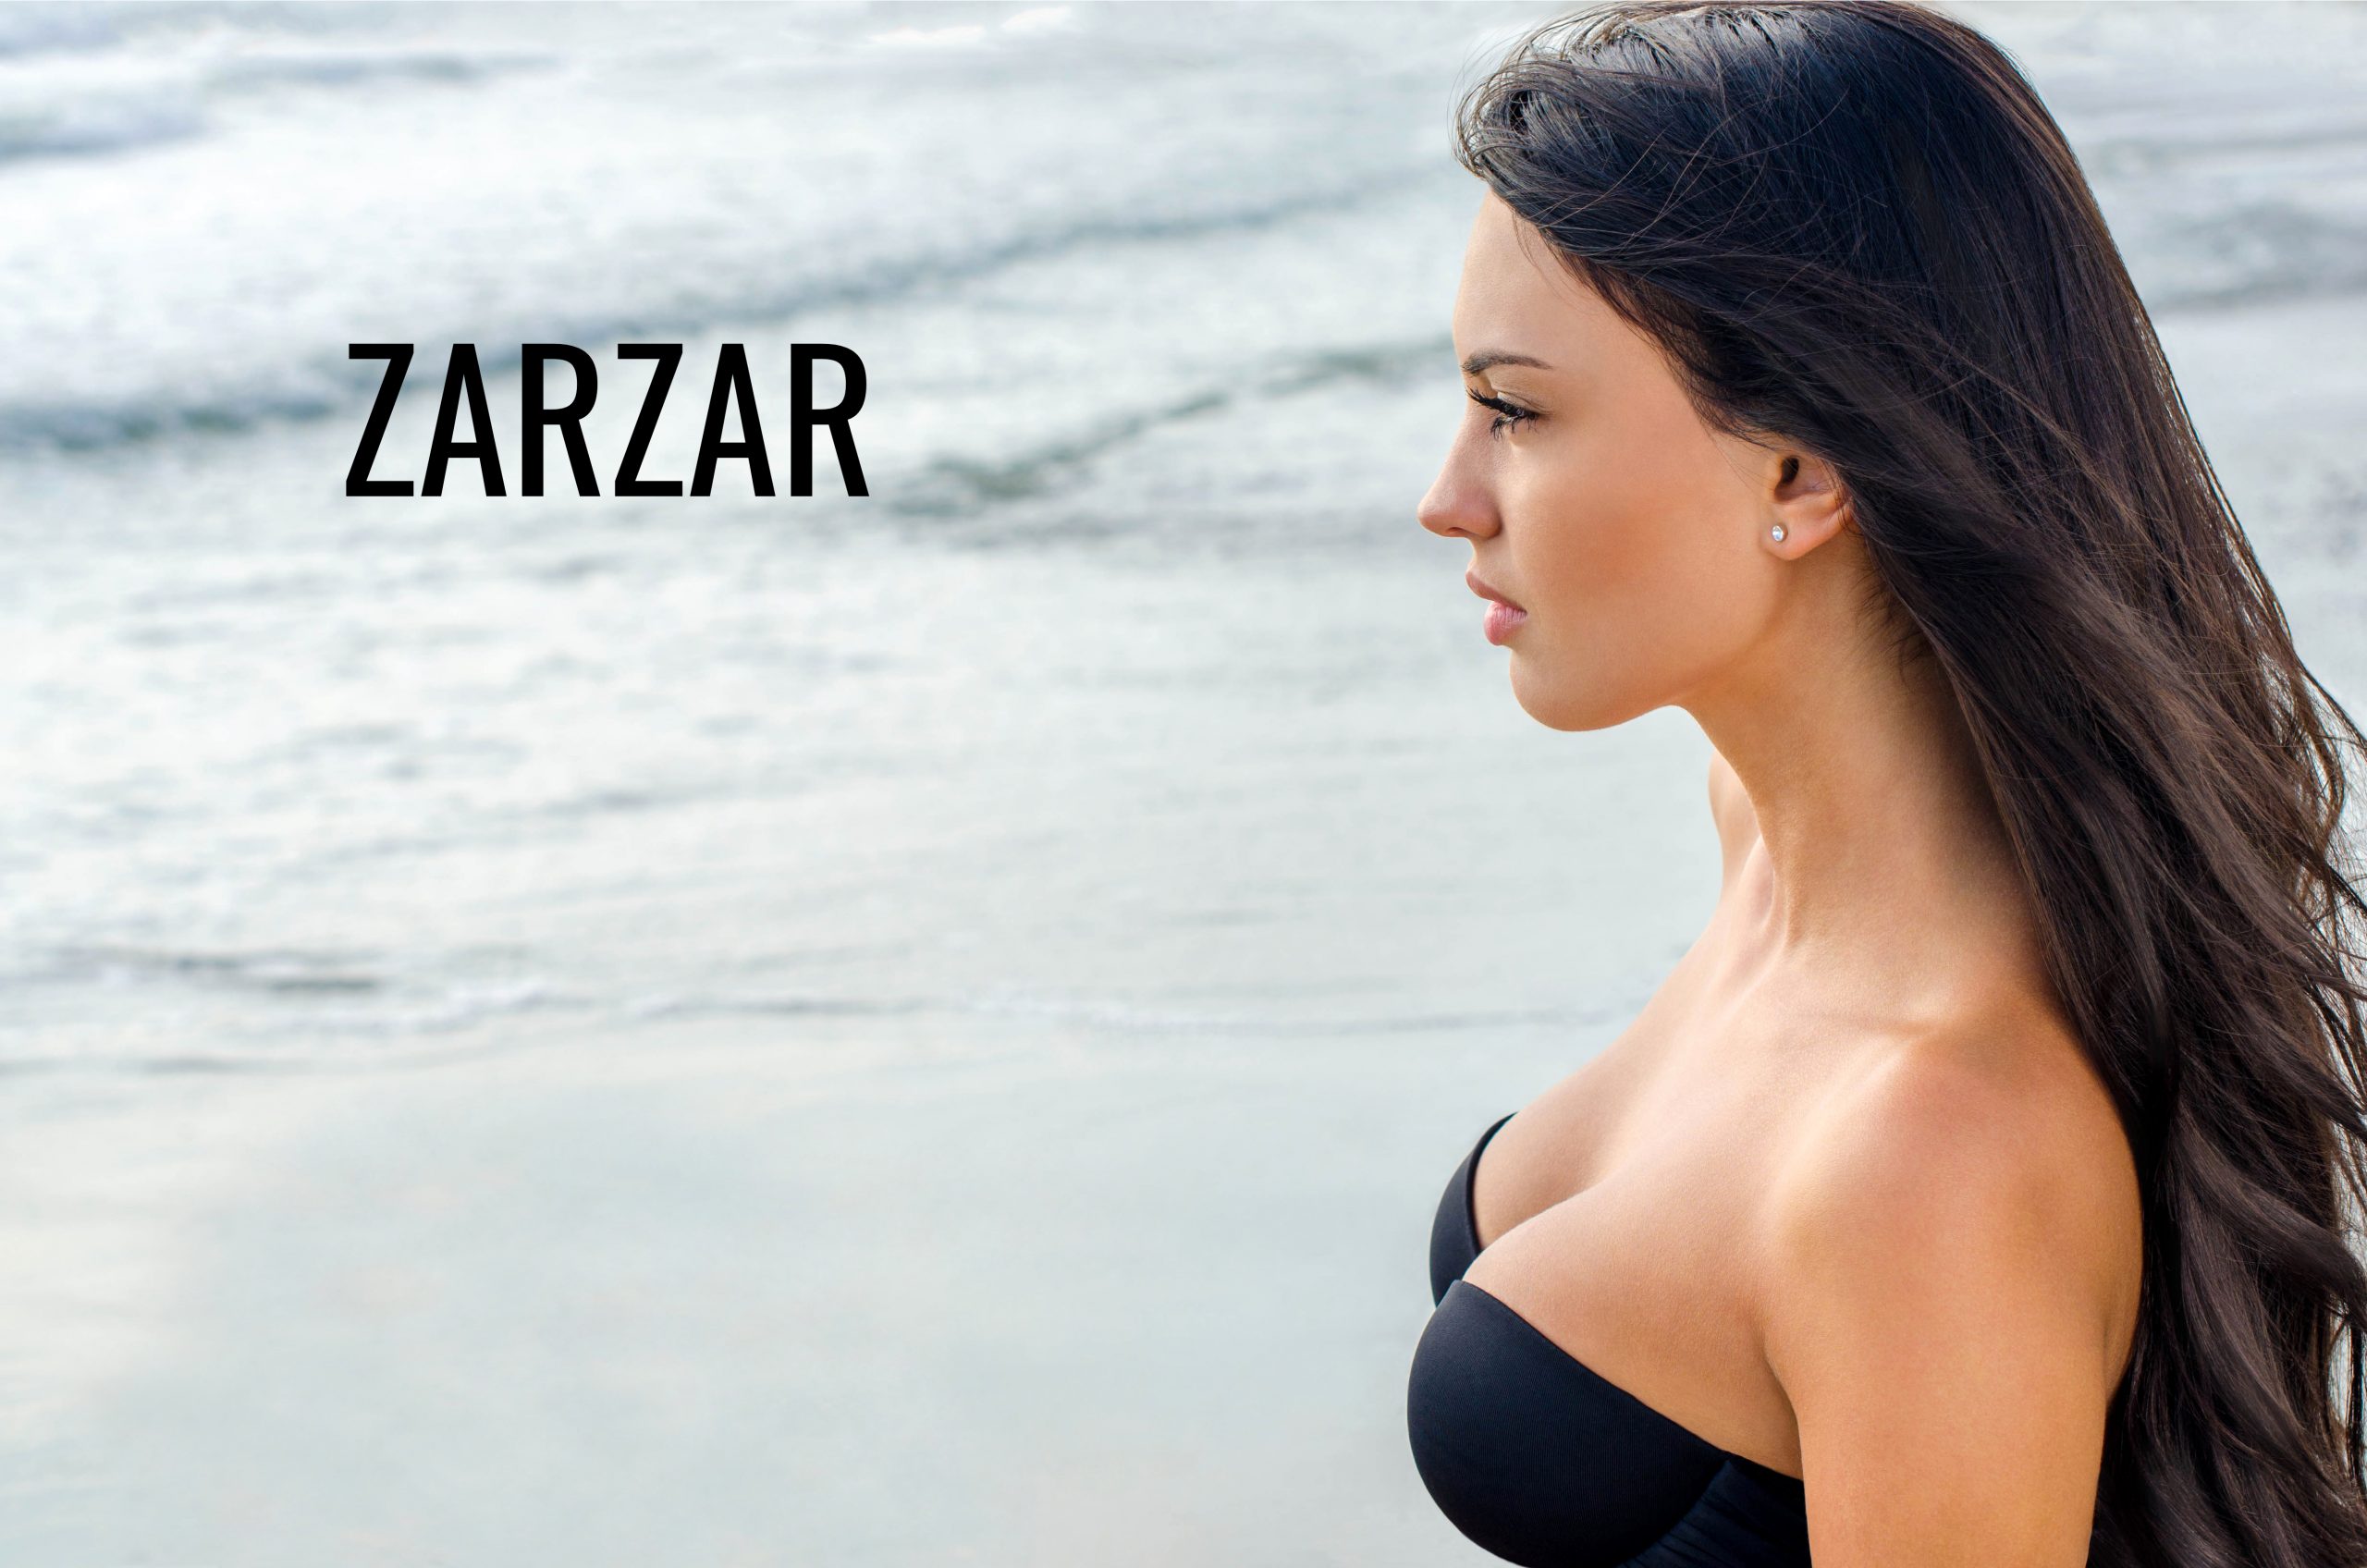 ZARZAR FASHION Swimwear For Women (Bikinis For Women). Sexy Brunette Girl Looking At The Beautiful Ocean (The Beautiful Sea).